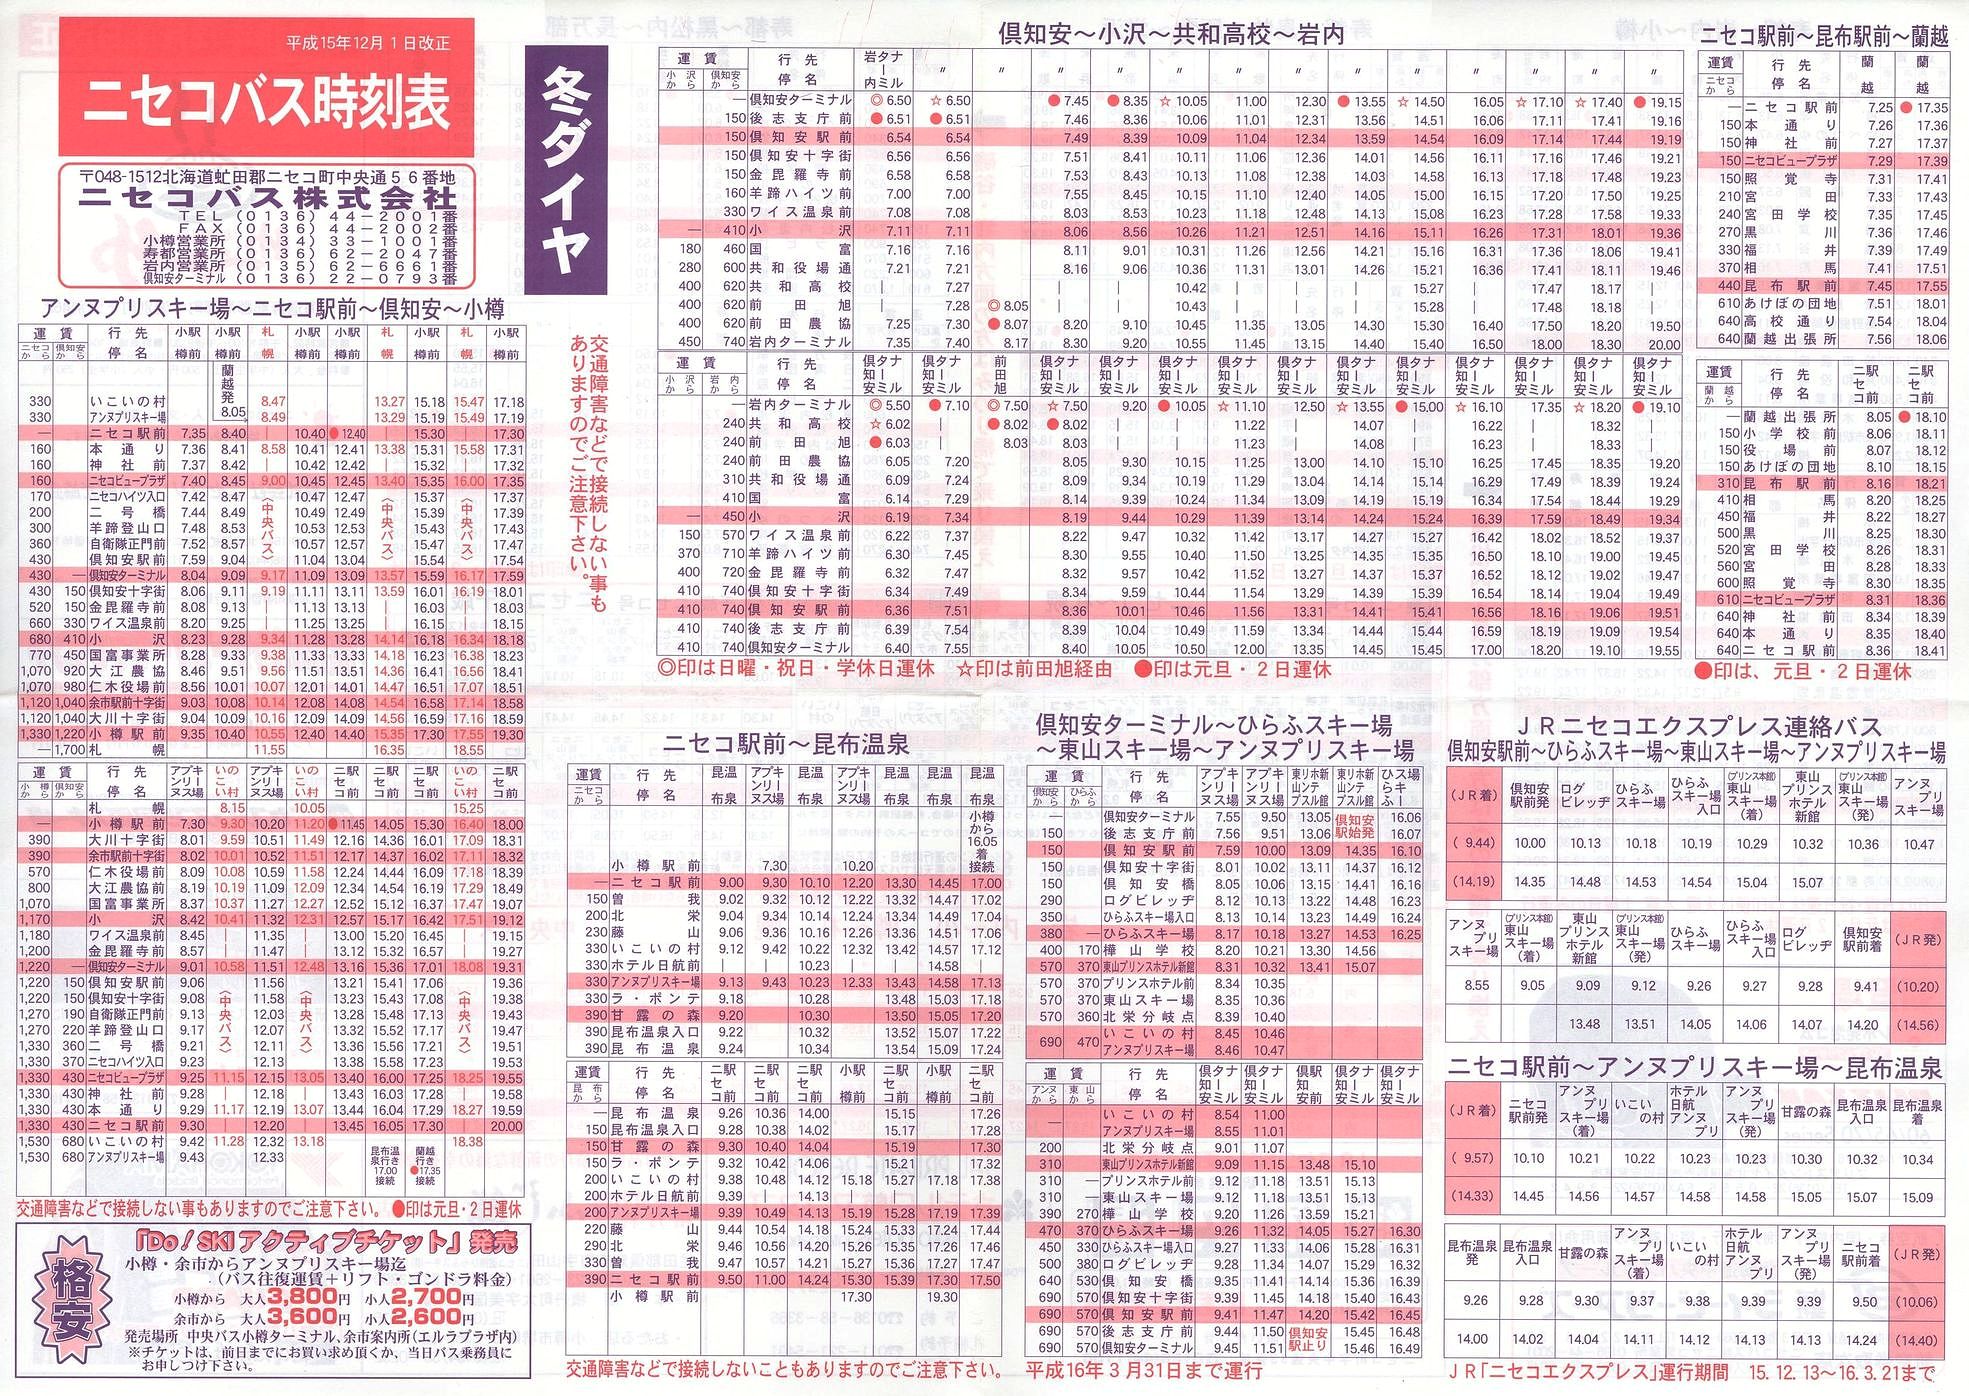 2003-12-01改正_ニセコバス_時刻表表面